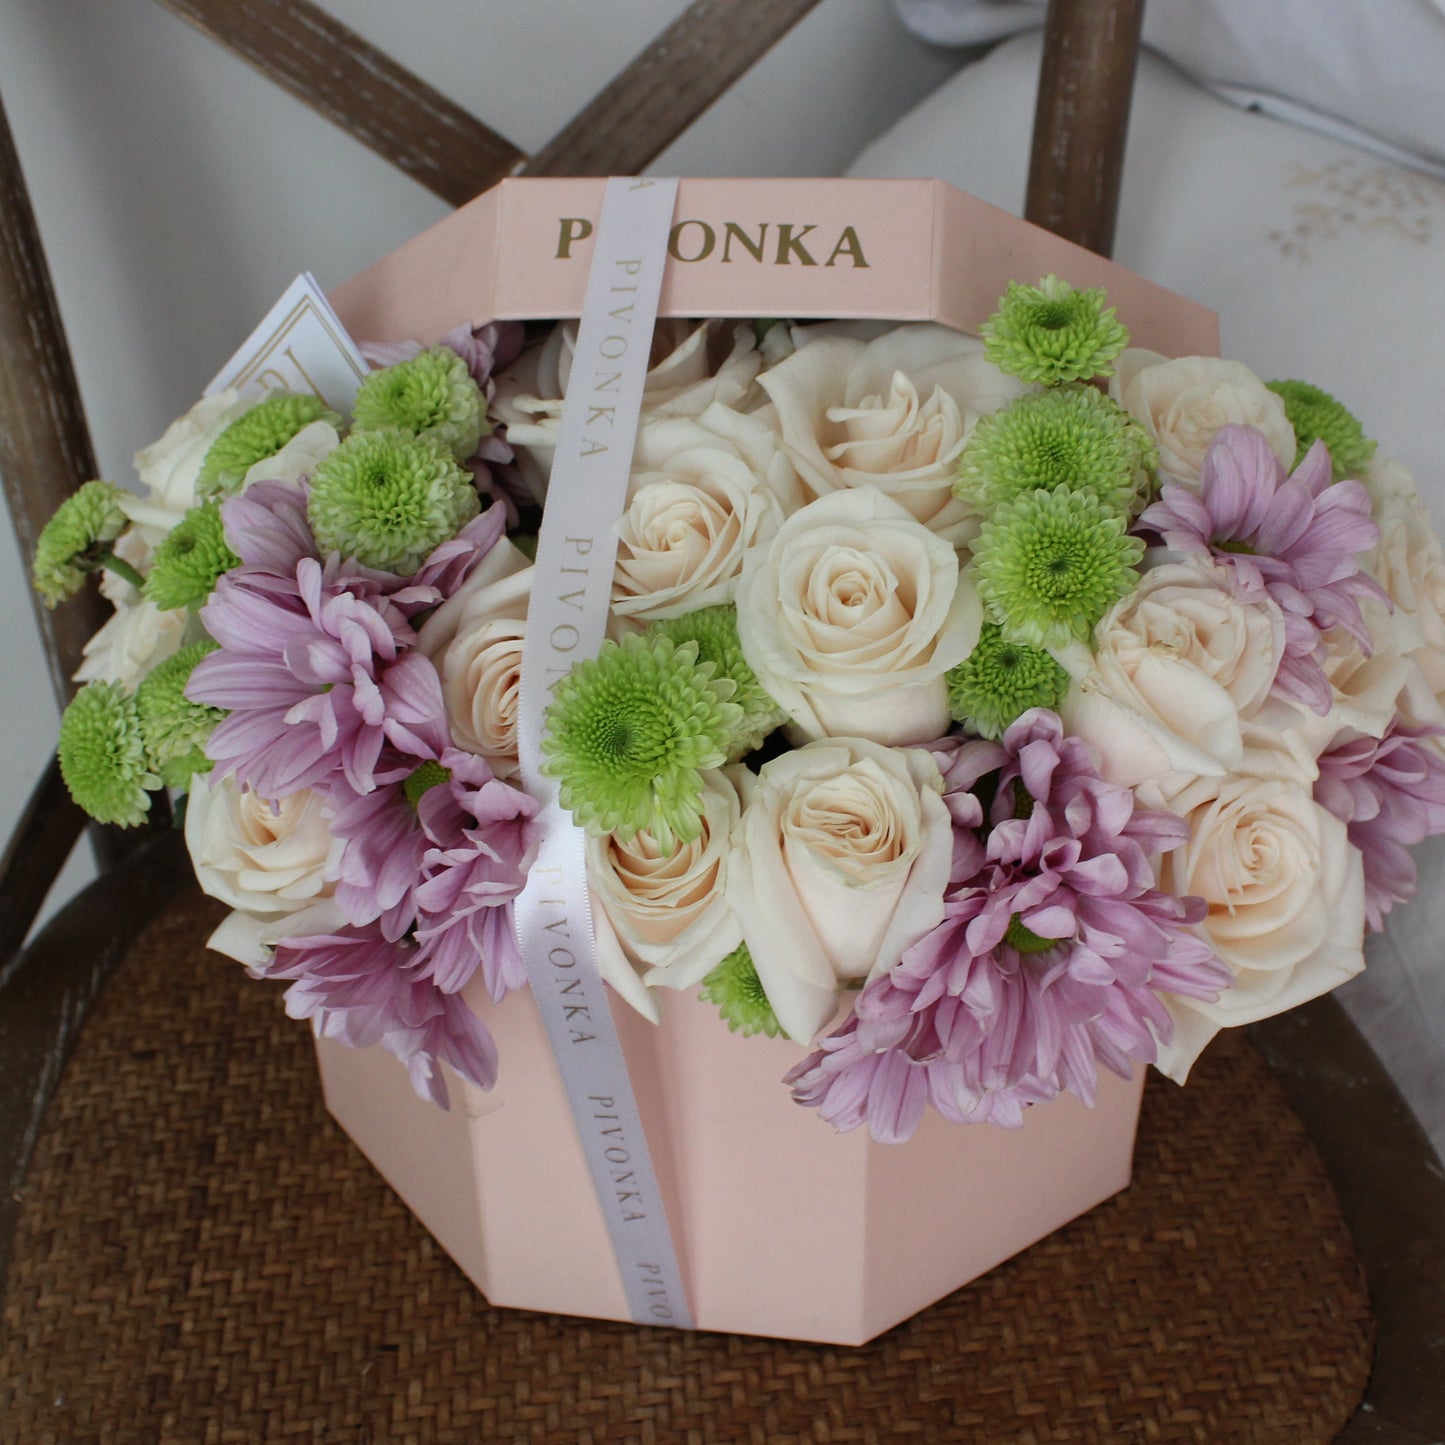 Pivonka Flores Monterrey. Caja octagonal con rosas blancas y margaritas moradas.